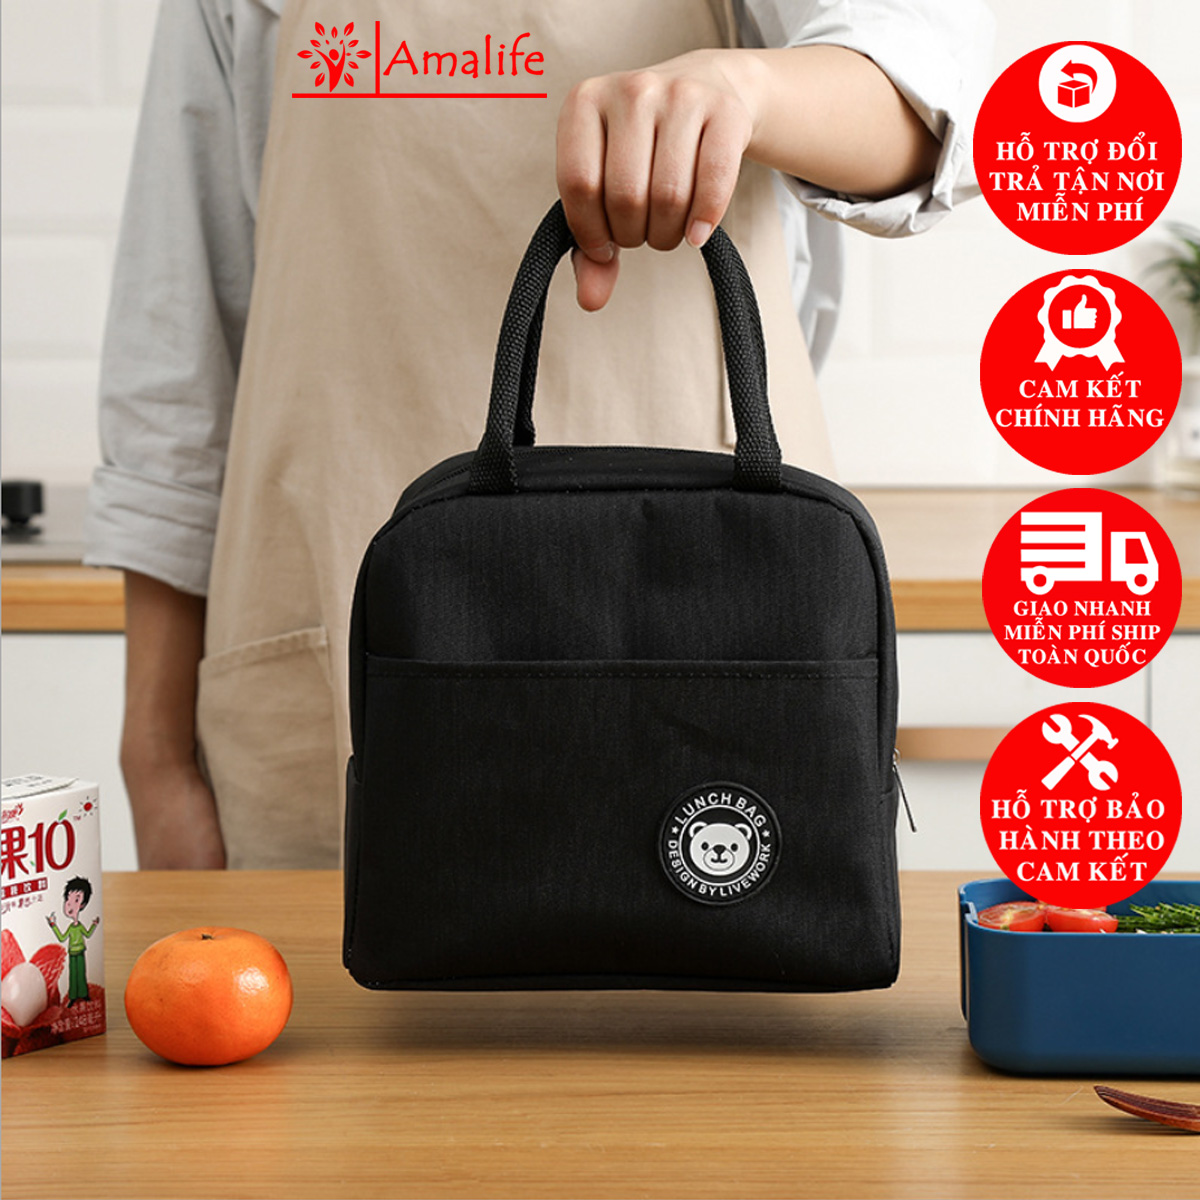 Túi giữ nhiệt đựng cơm chính hãng Amalife